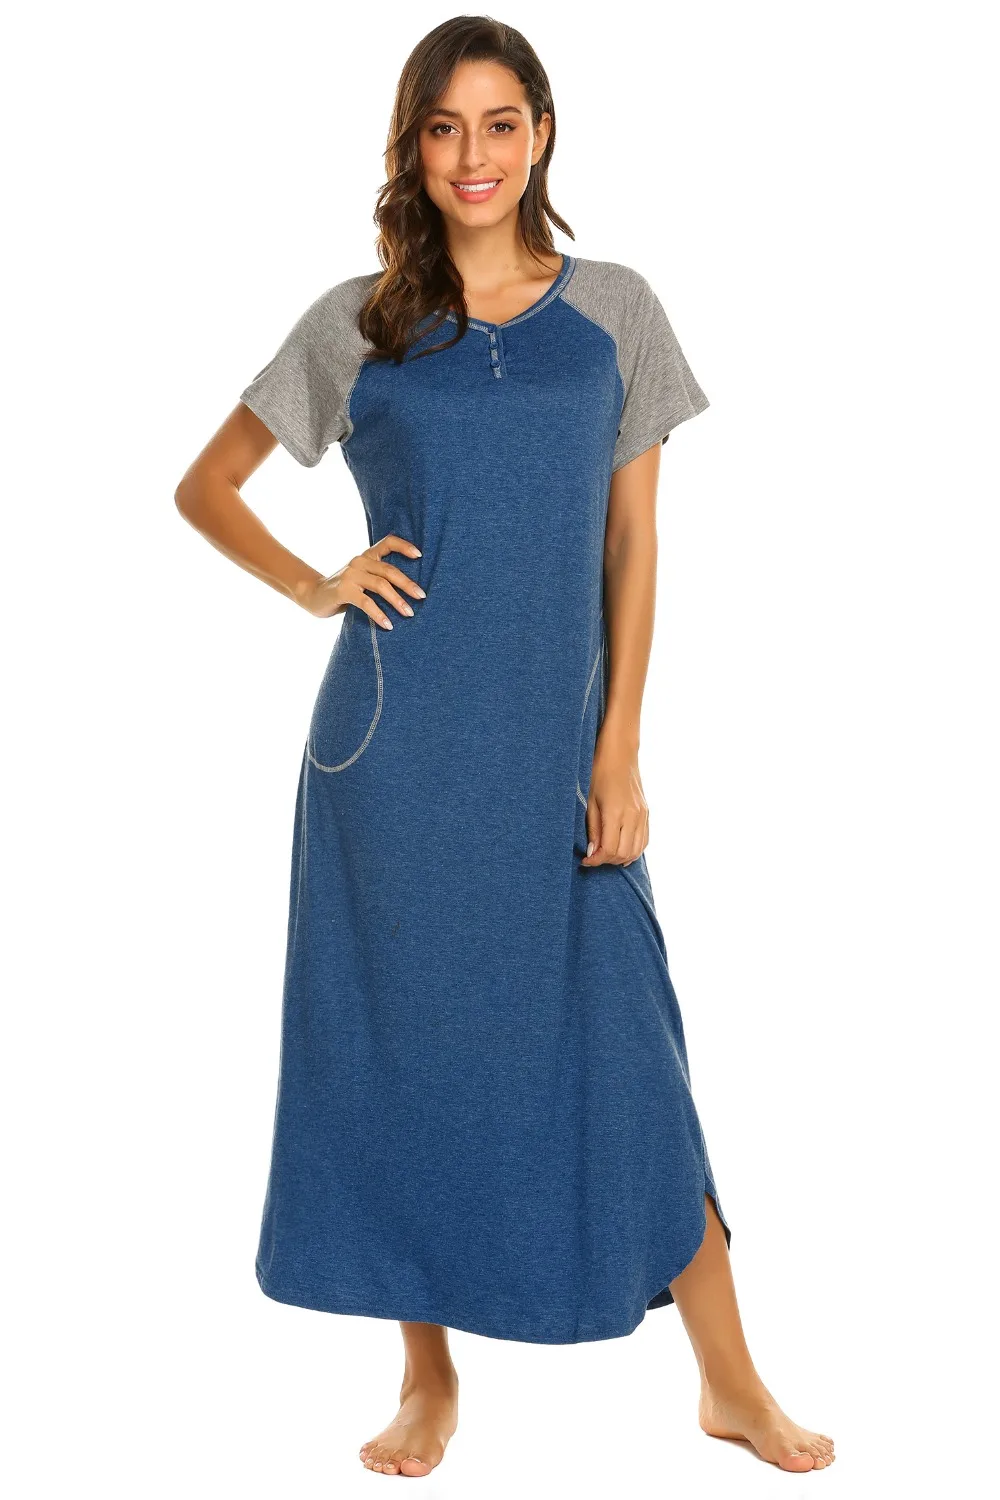 Ekouaer женская ночная рубашка, одежда для сна, платье с v-образным вырезом, короткий рукав, пэтчворк, длинная ночная рубашка, сорочка, ночная рубашка, мягкое платье для отдыха